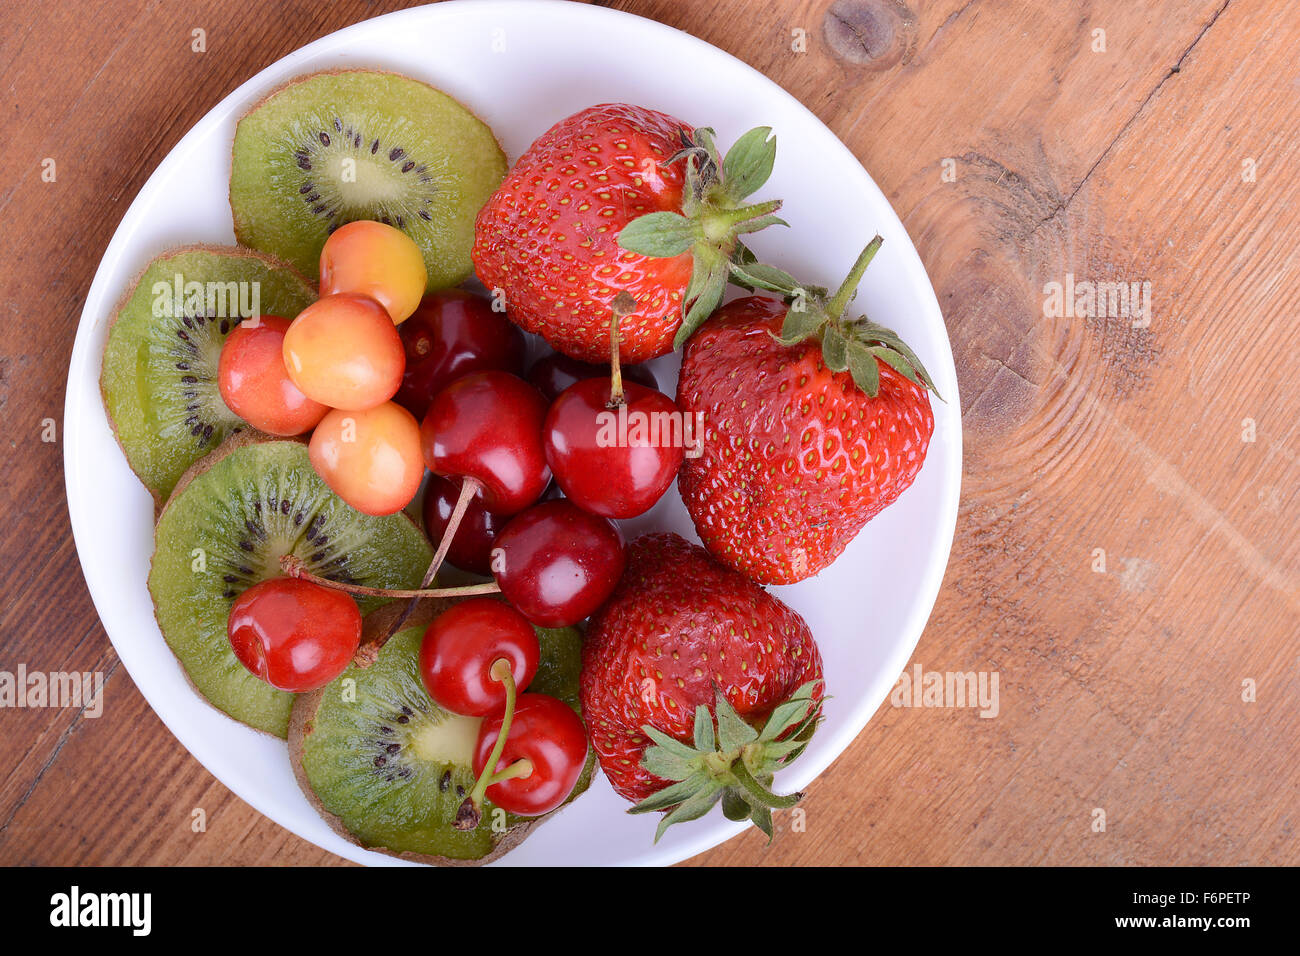 Fruits santé avec cerise, fraise, kiwi sur plaque de bois Banque D'Images